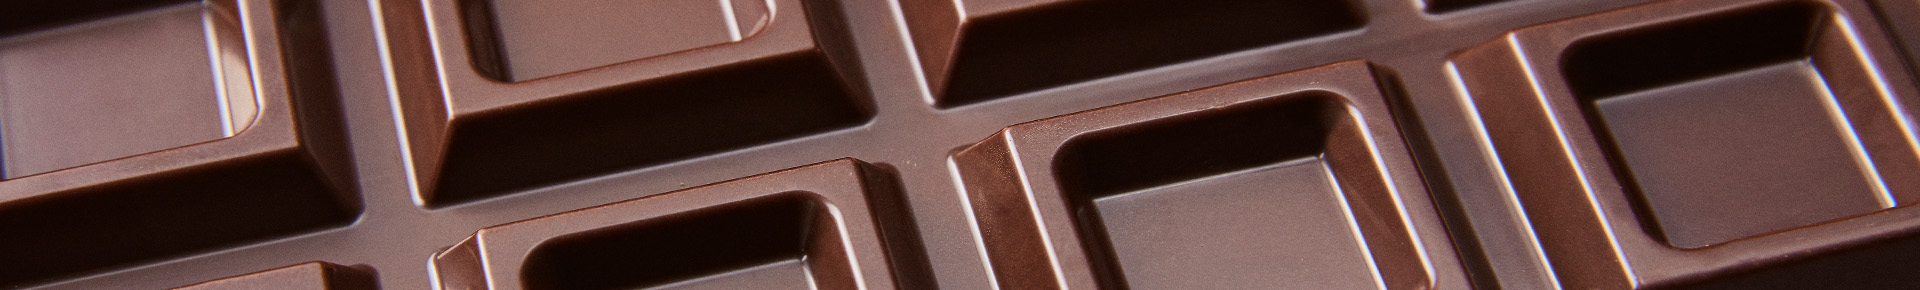 Tavoletta di cioccolato da 1000g extra fondente Perugina